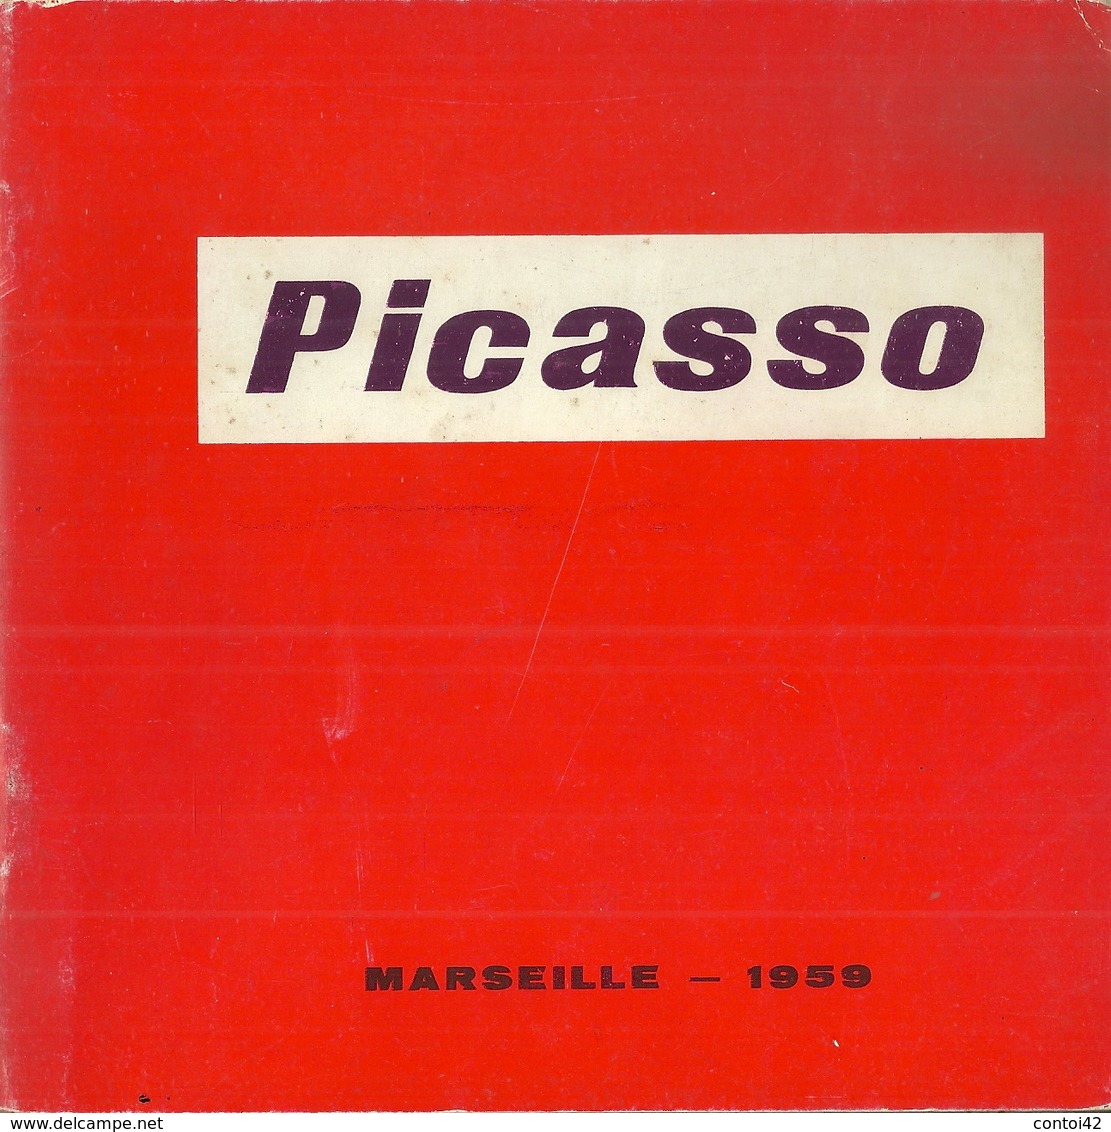 13 MARSEILLE PABLO PICASSO CATALOGUE 1959 EXPOSITION MUSEE CANTINI PEINTURE CUBISME GUERRE METAPHORES ART - Sammlungen